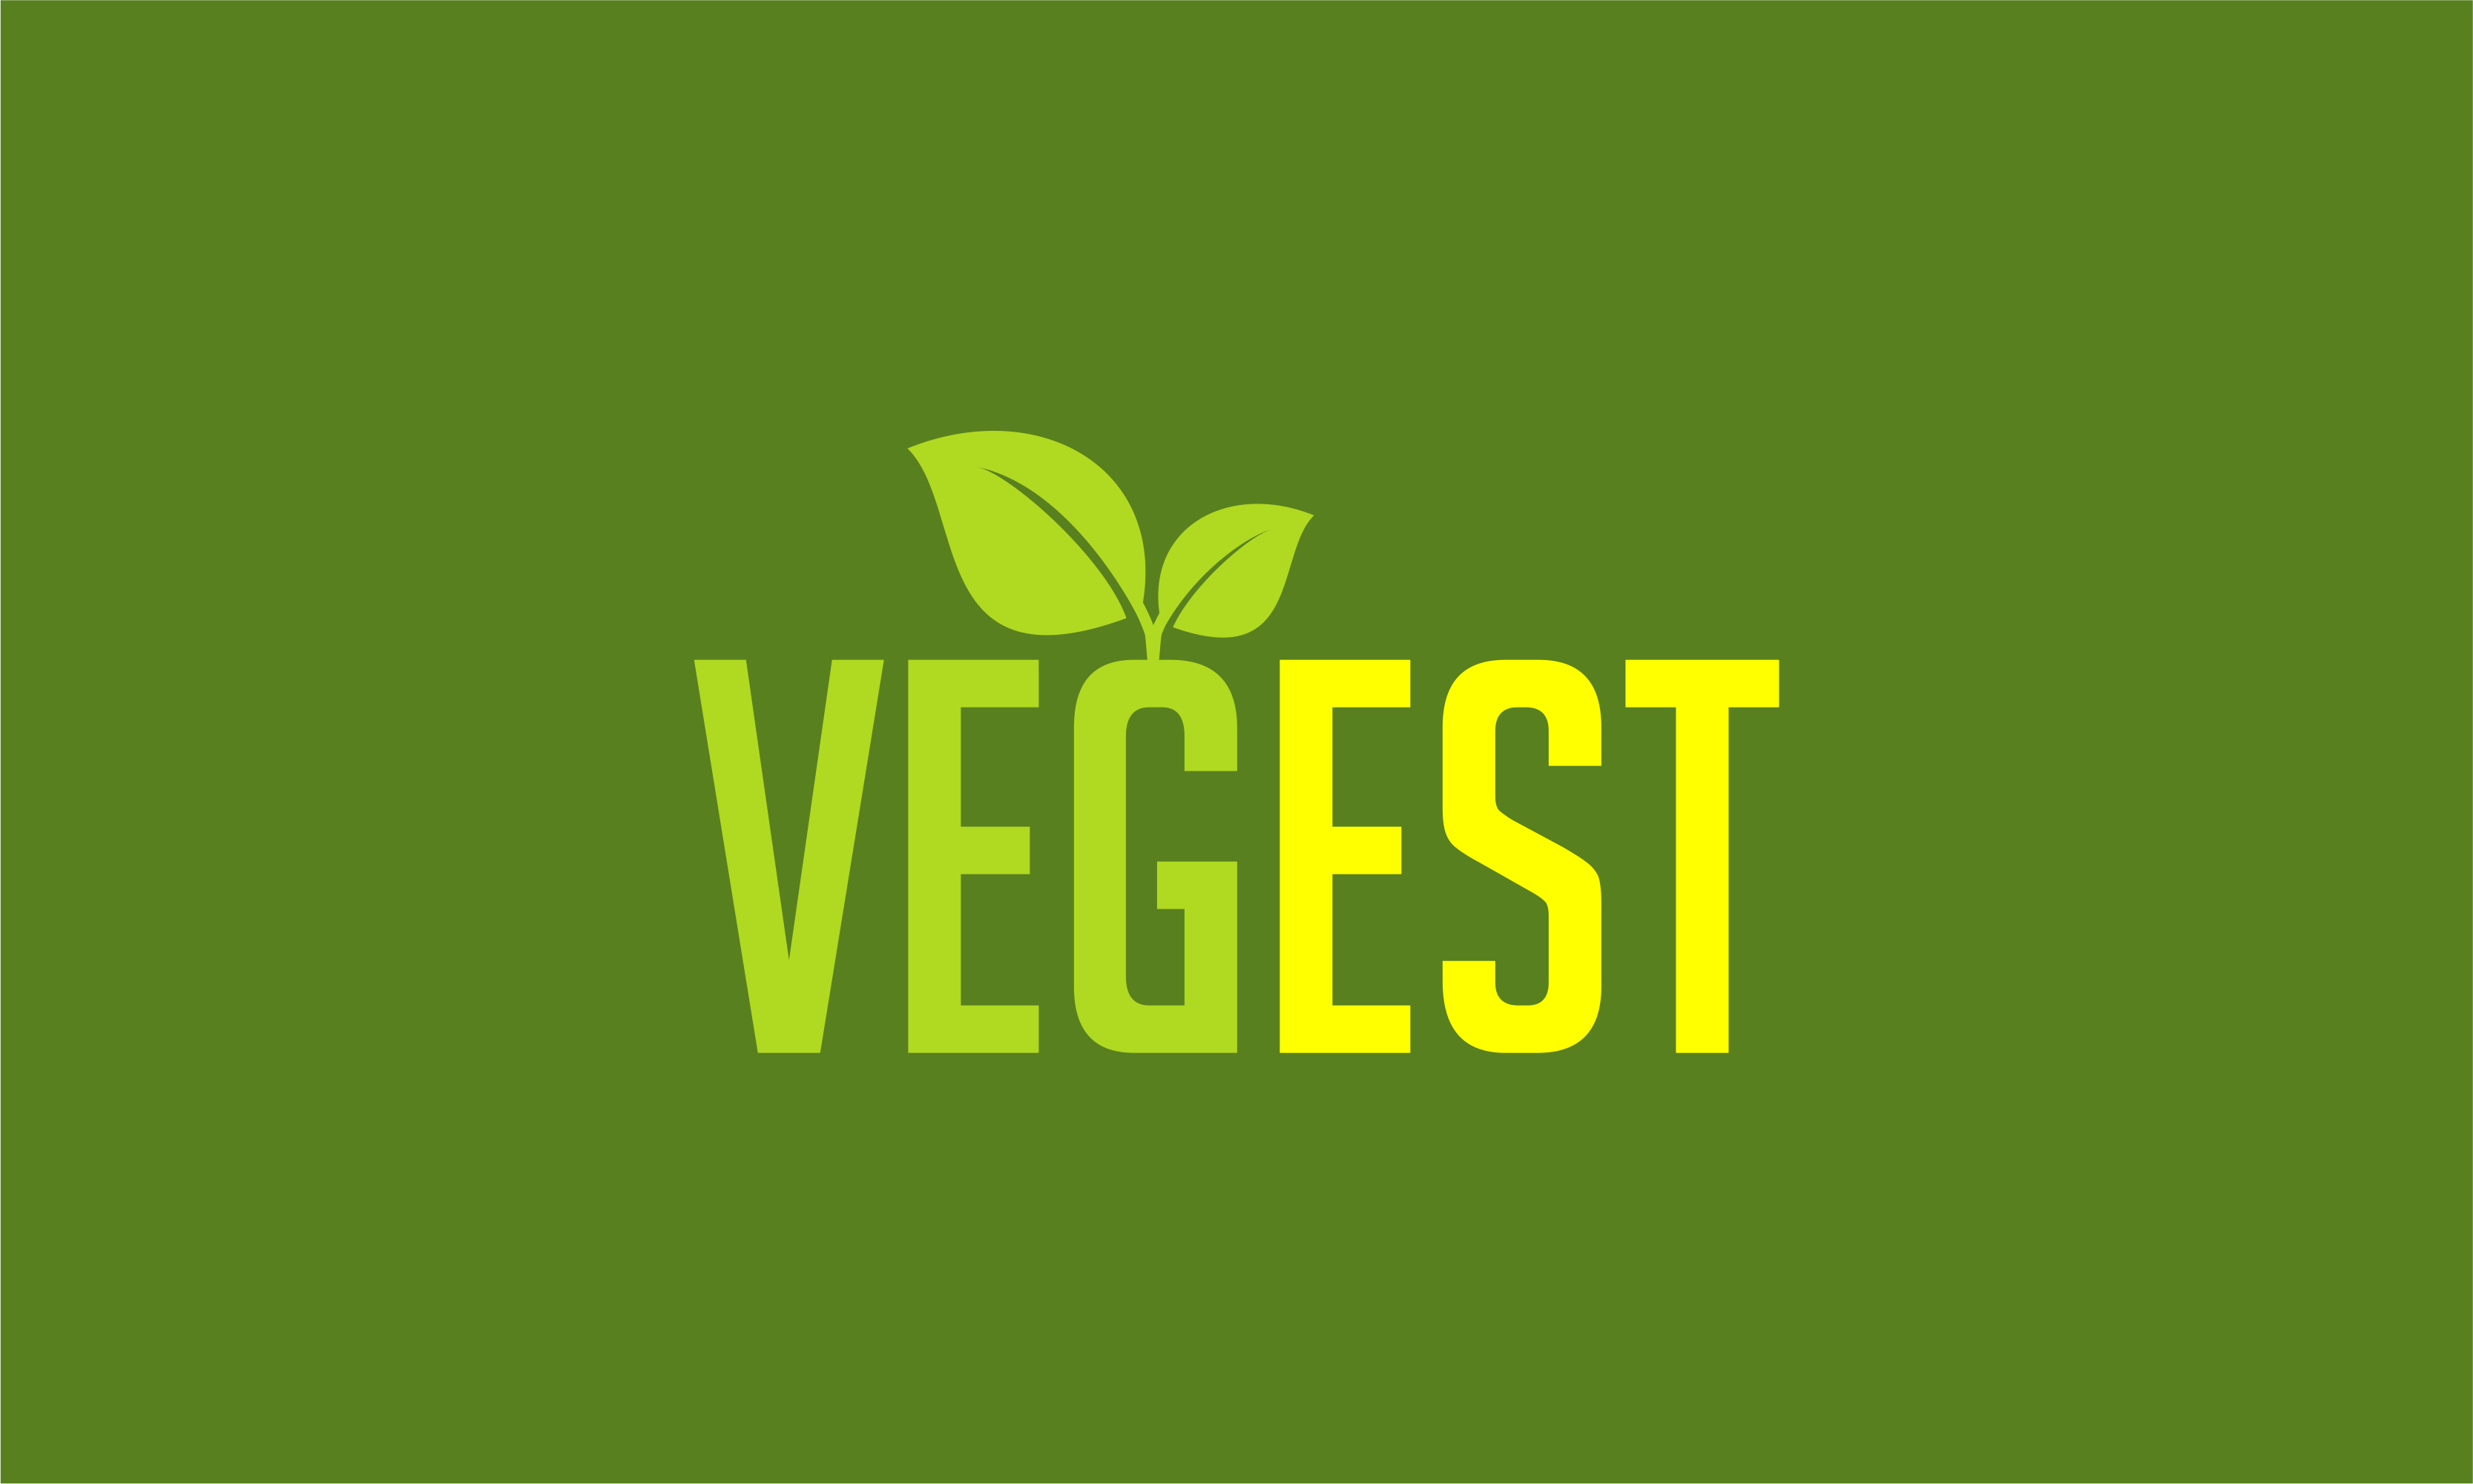 vegest1.png